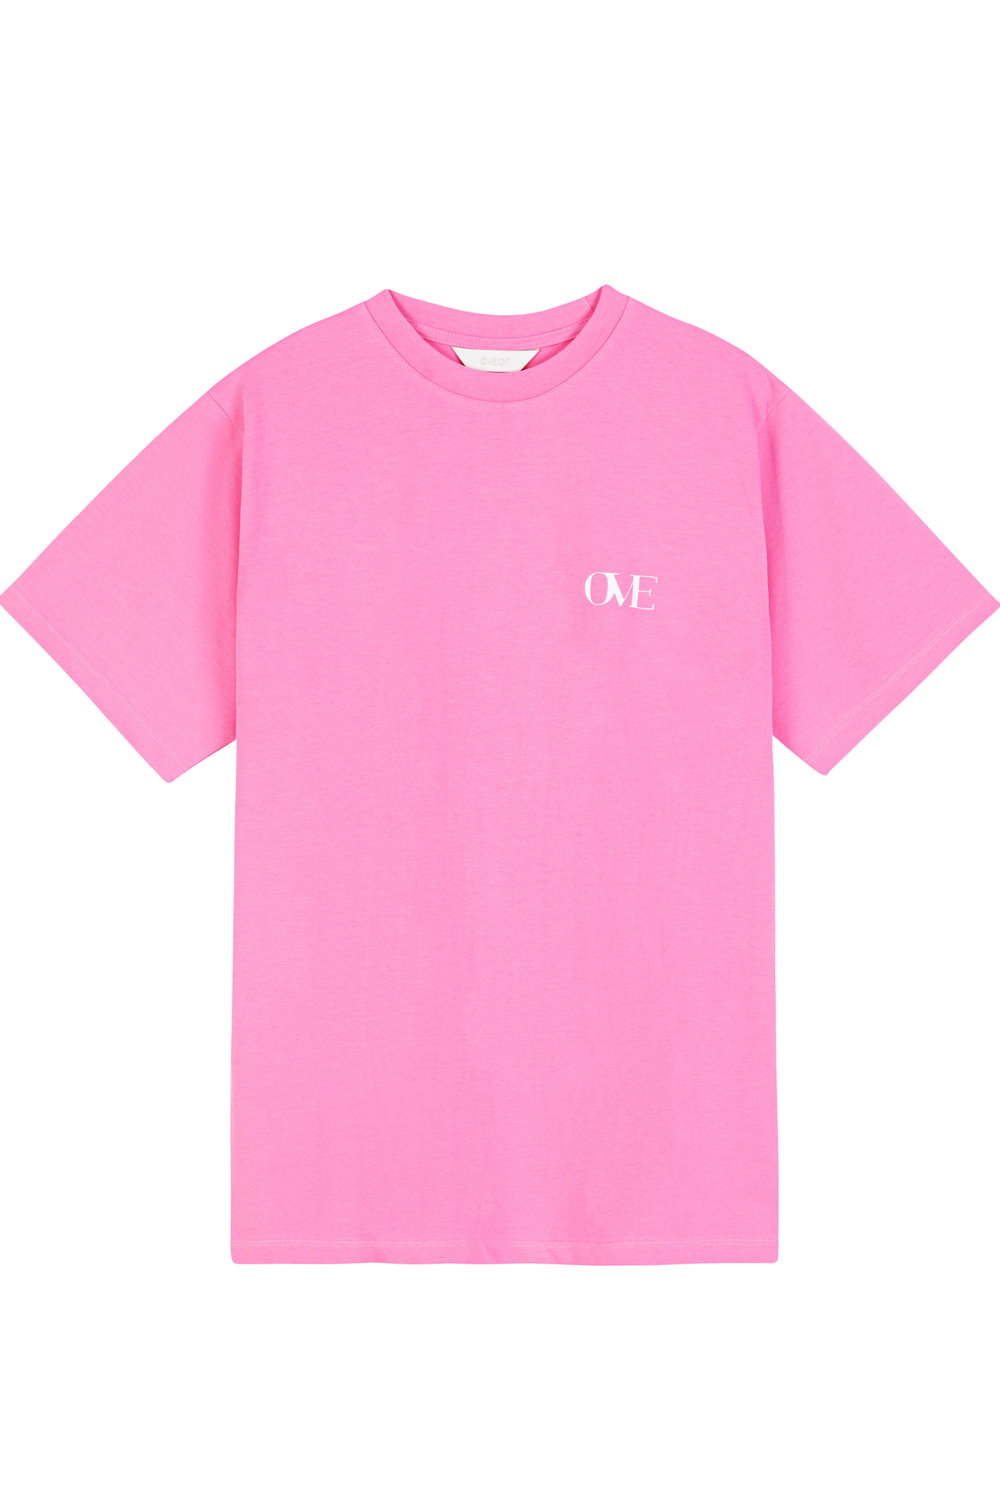 [5차] Ove T-shirts_3colors